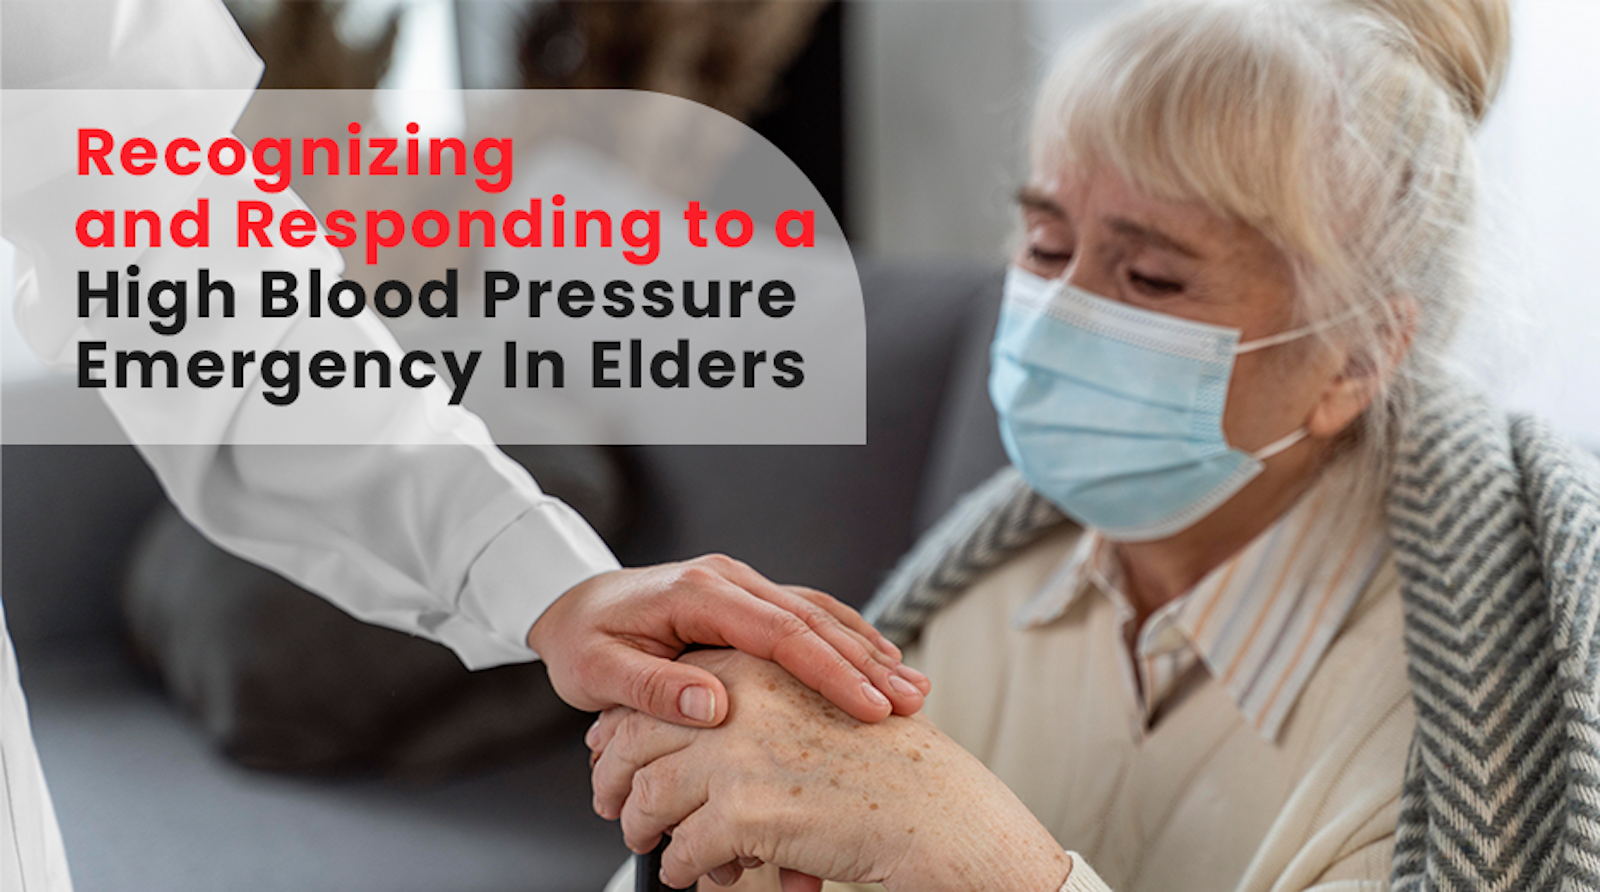 Responding to a High Blood Pressure Emergency In Elders